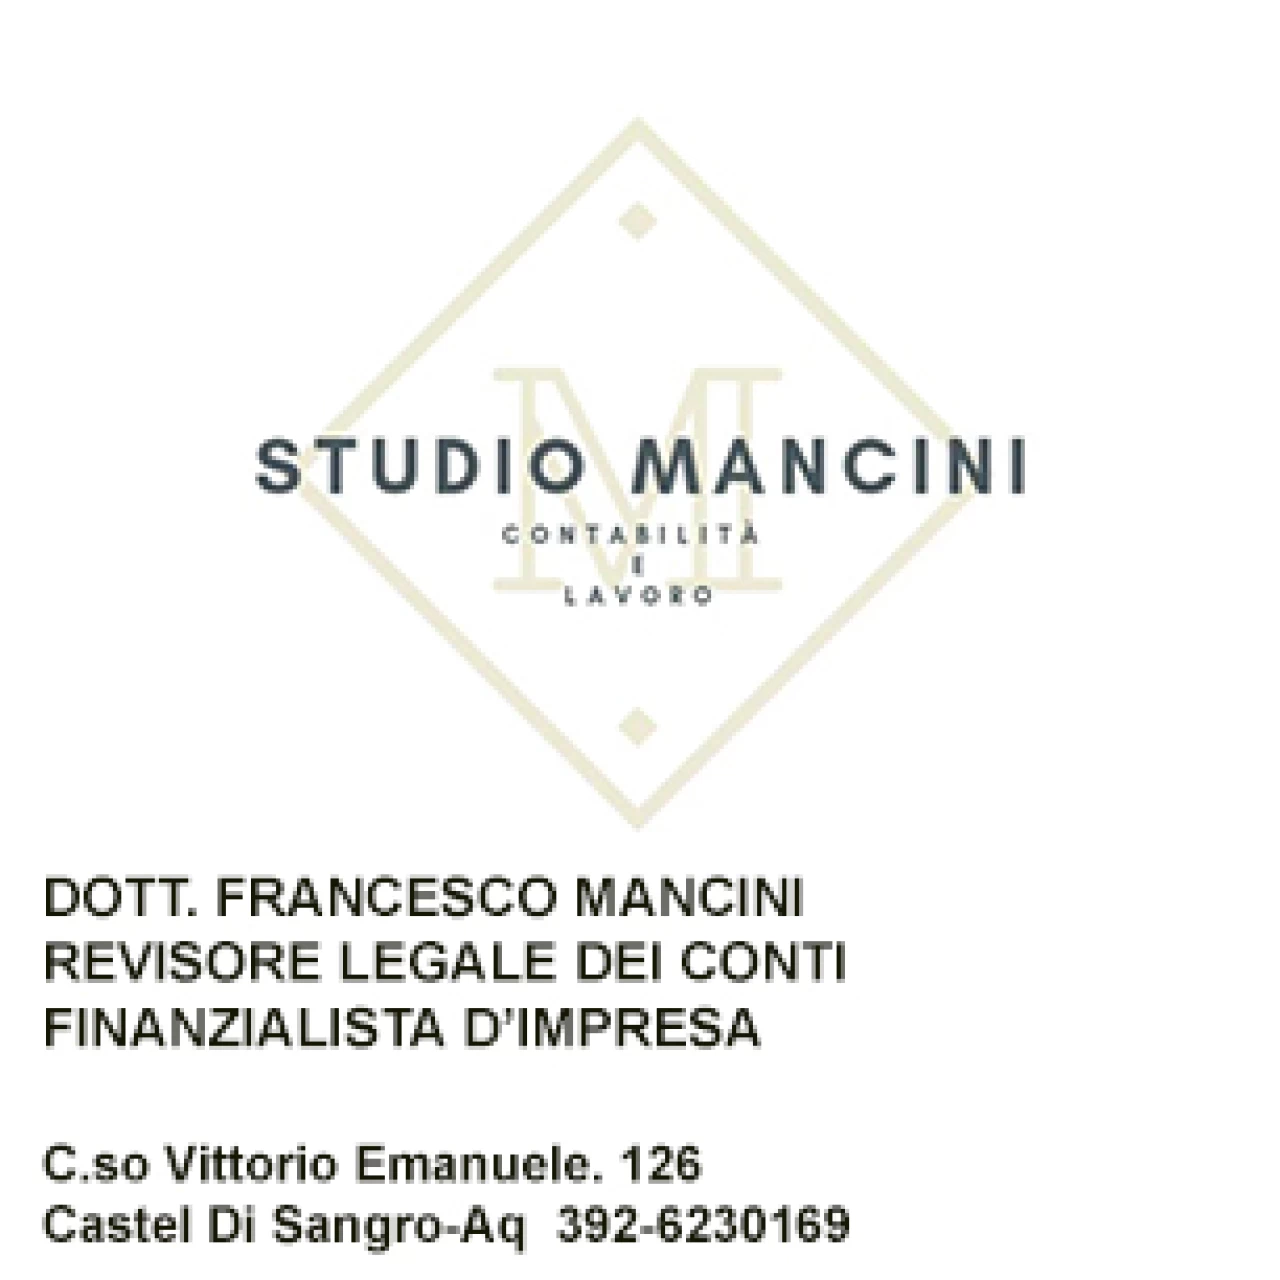 Banner Studio Mancini 306 per 198 pixel